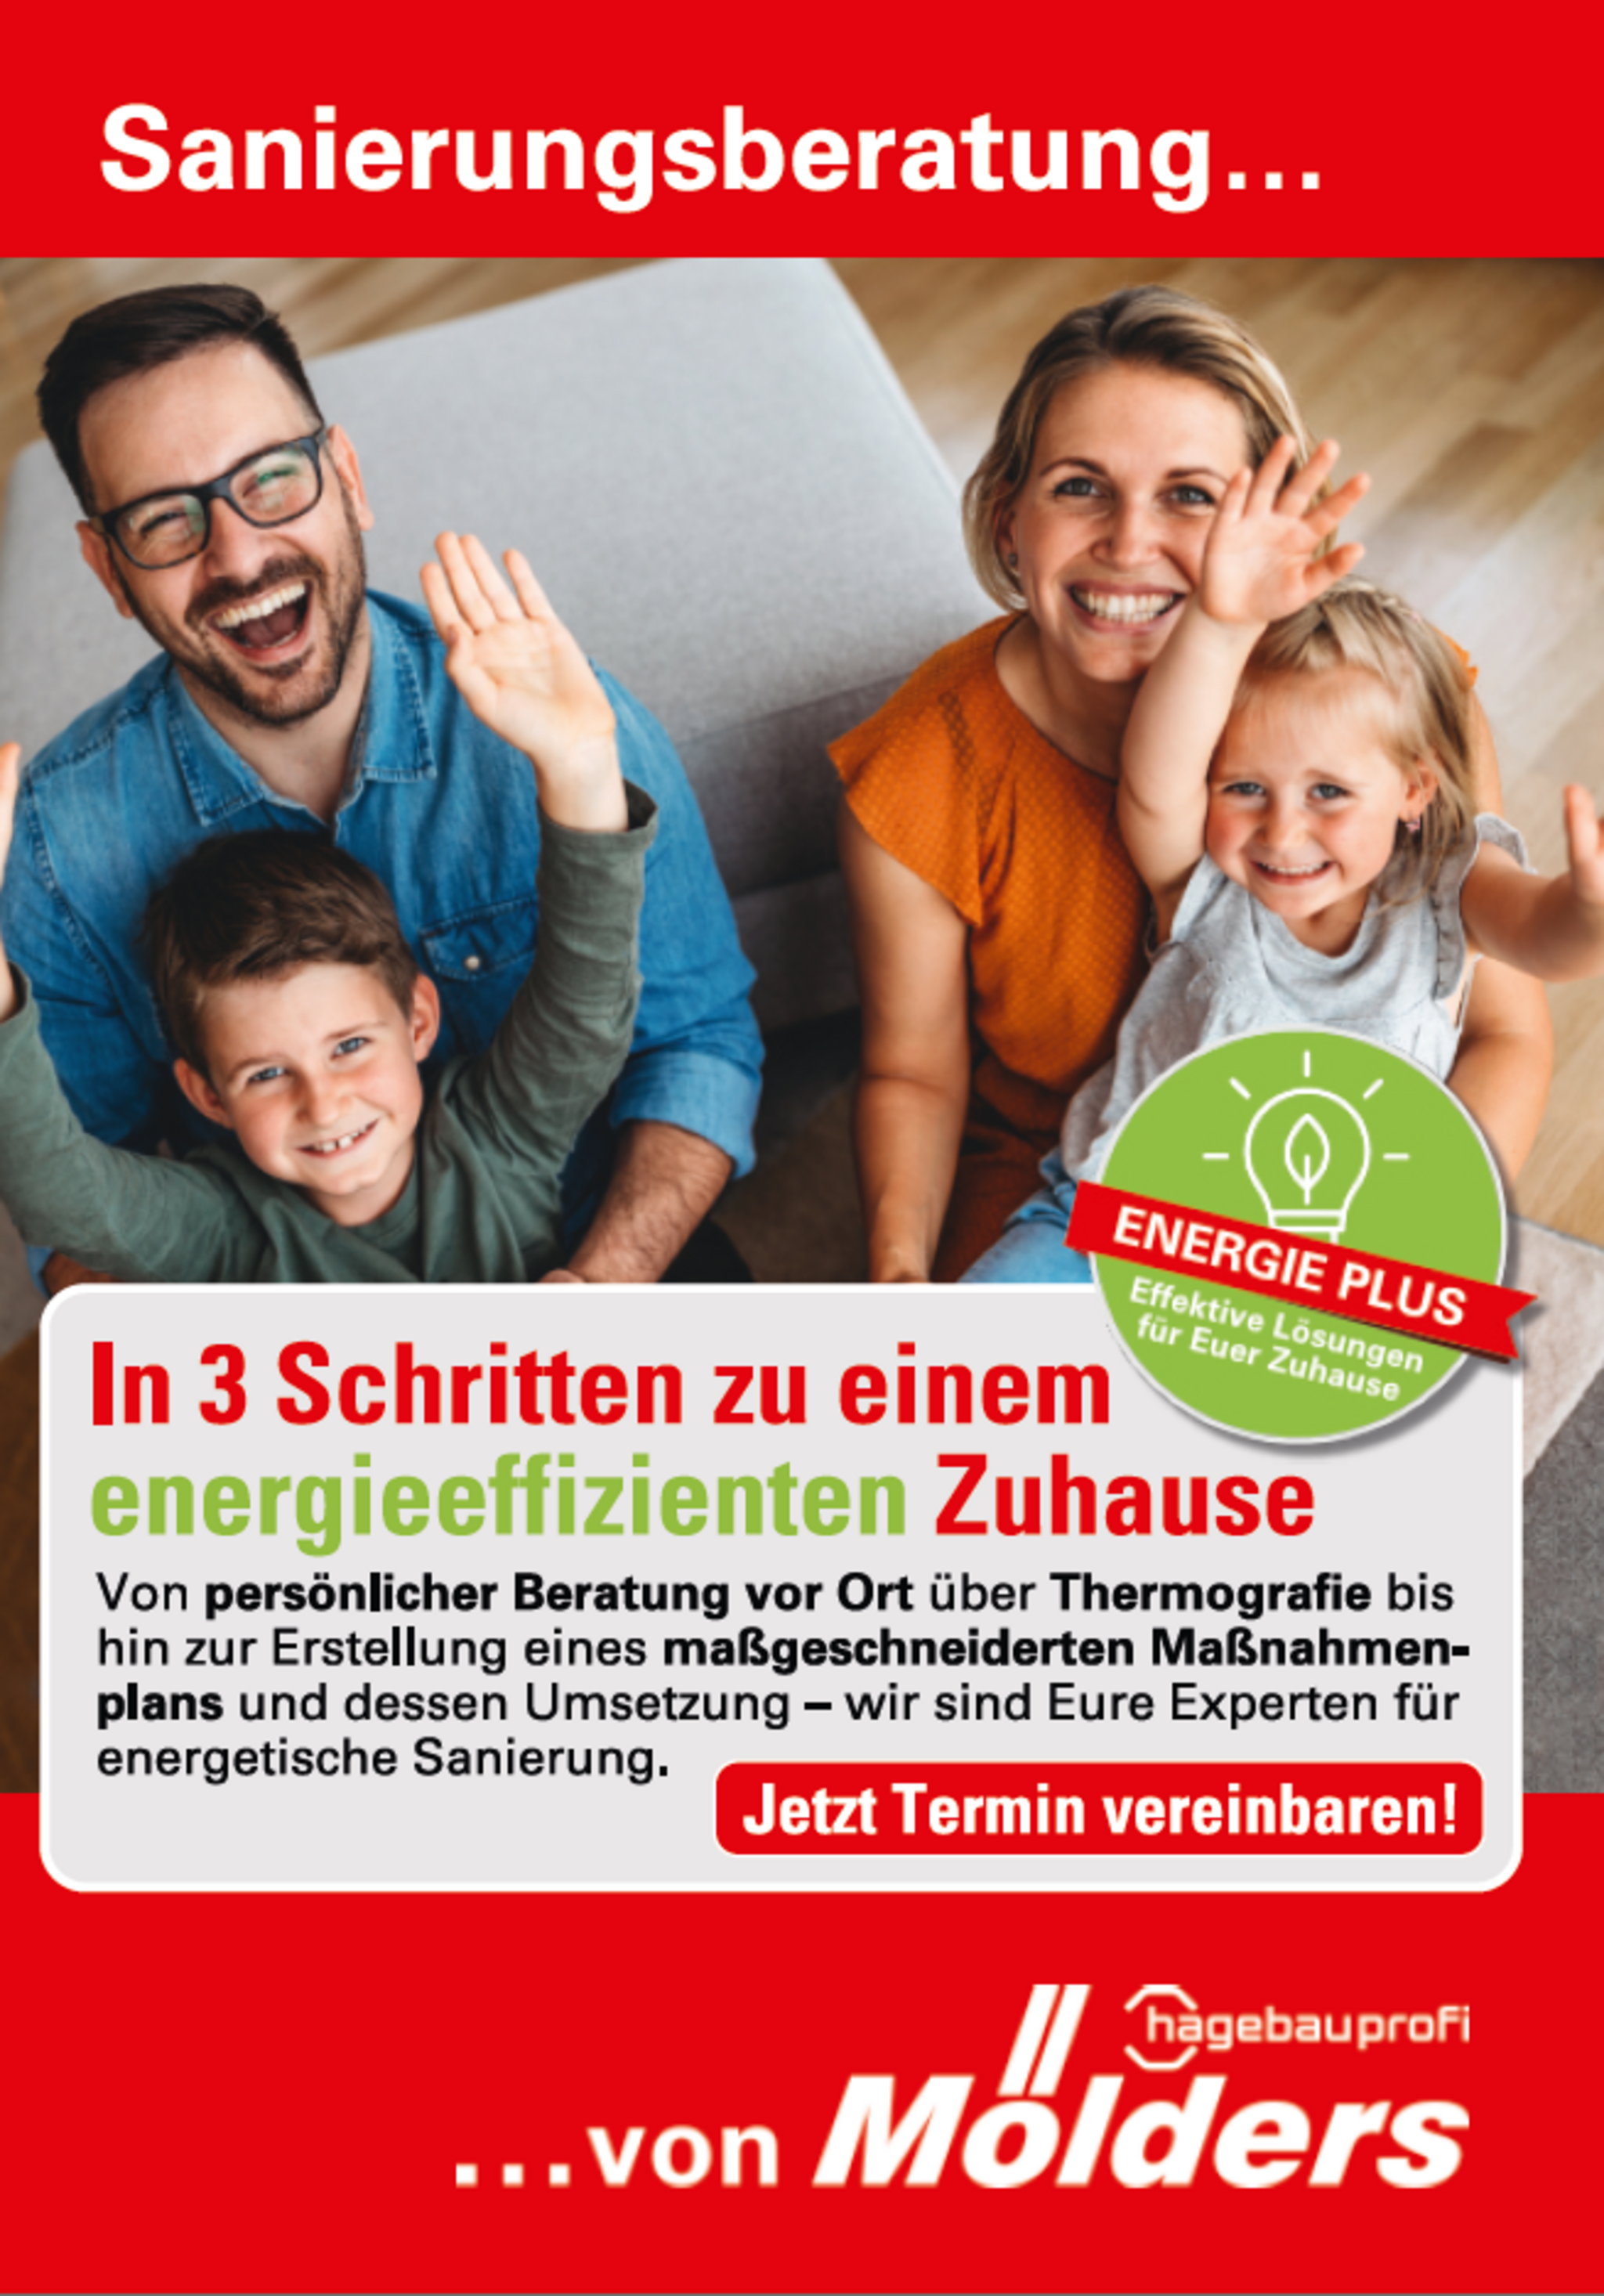 Titelbild vom Flyer zur Sanierungsberatung vom Mölders Baucentrum mit einer fröhlichen Familie und einem Energie Plus Symbol